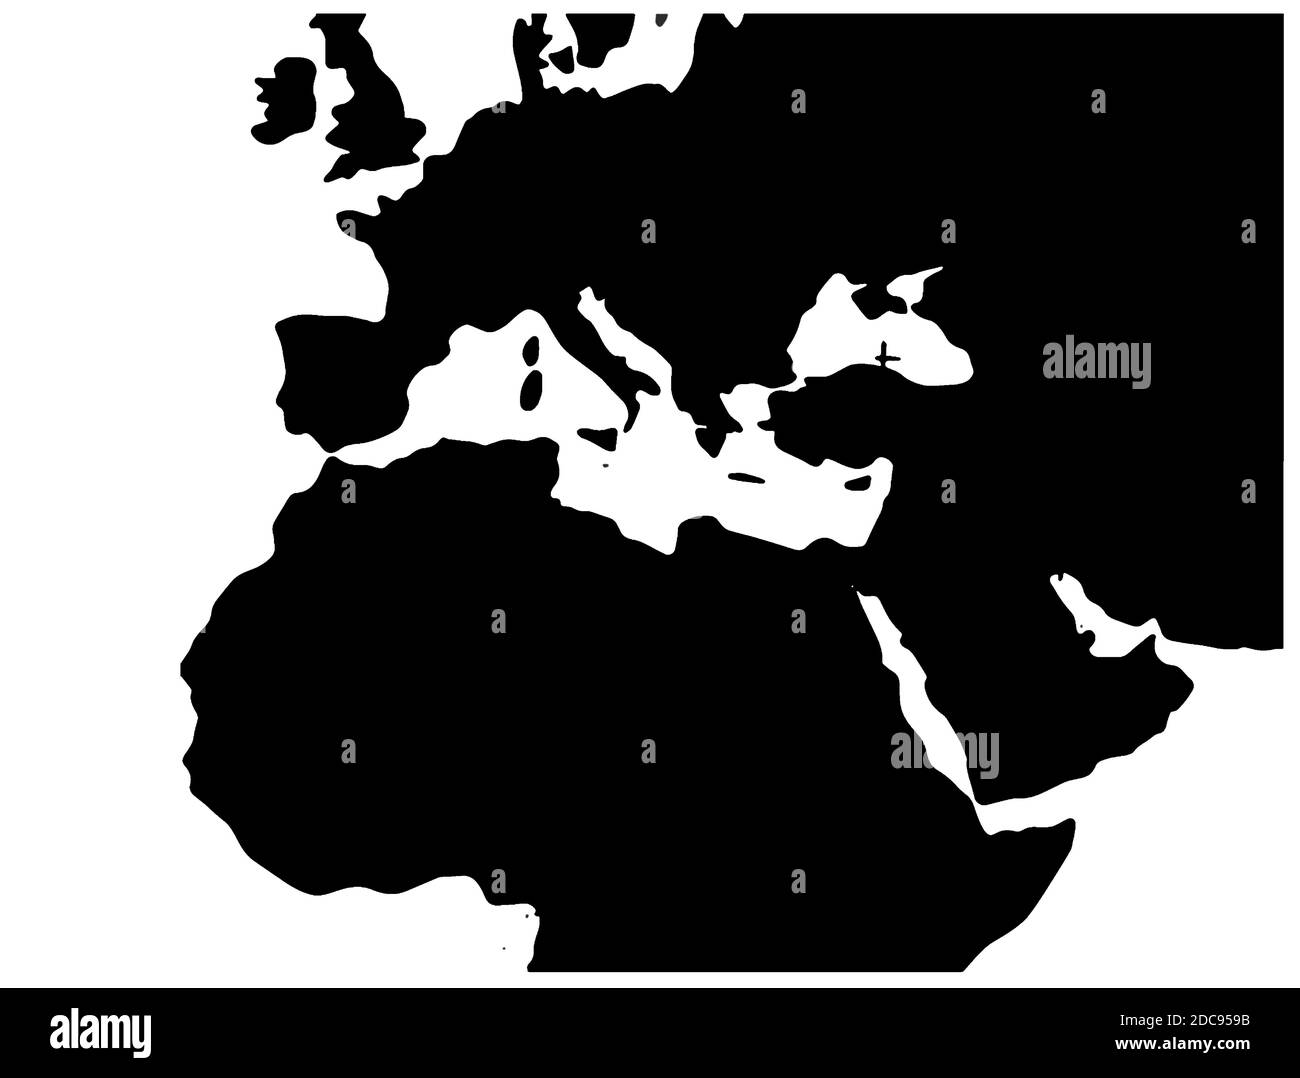 Illustration de la carte EMEA pour l'Europe, le Moyen-Orient et l'Afrique du Nord Illustration de Vecteur